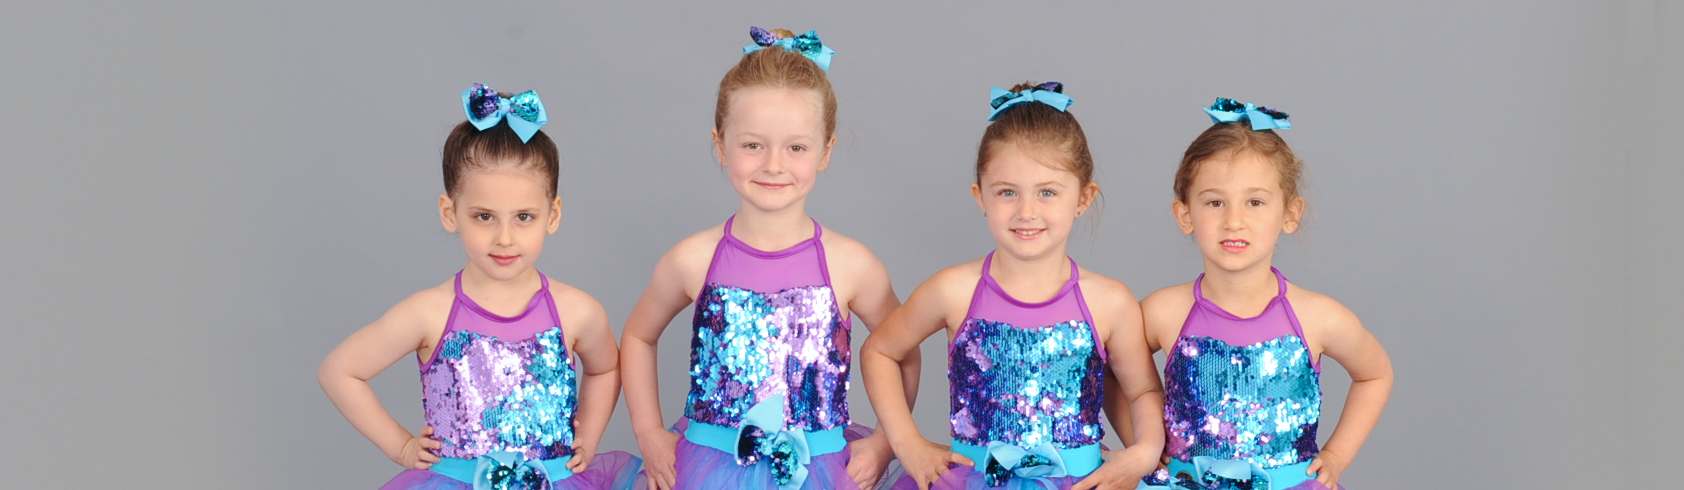 6 of the Best Kids Activities in Babylon Village — Positions Dance Studio